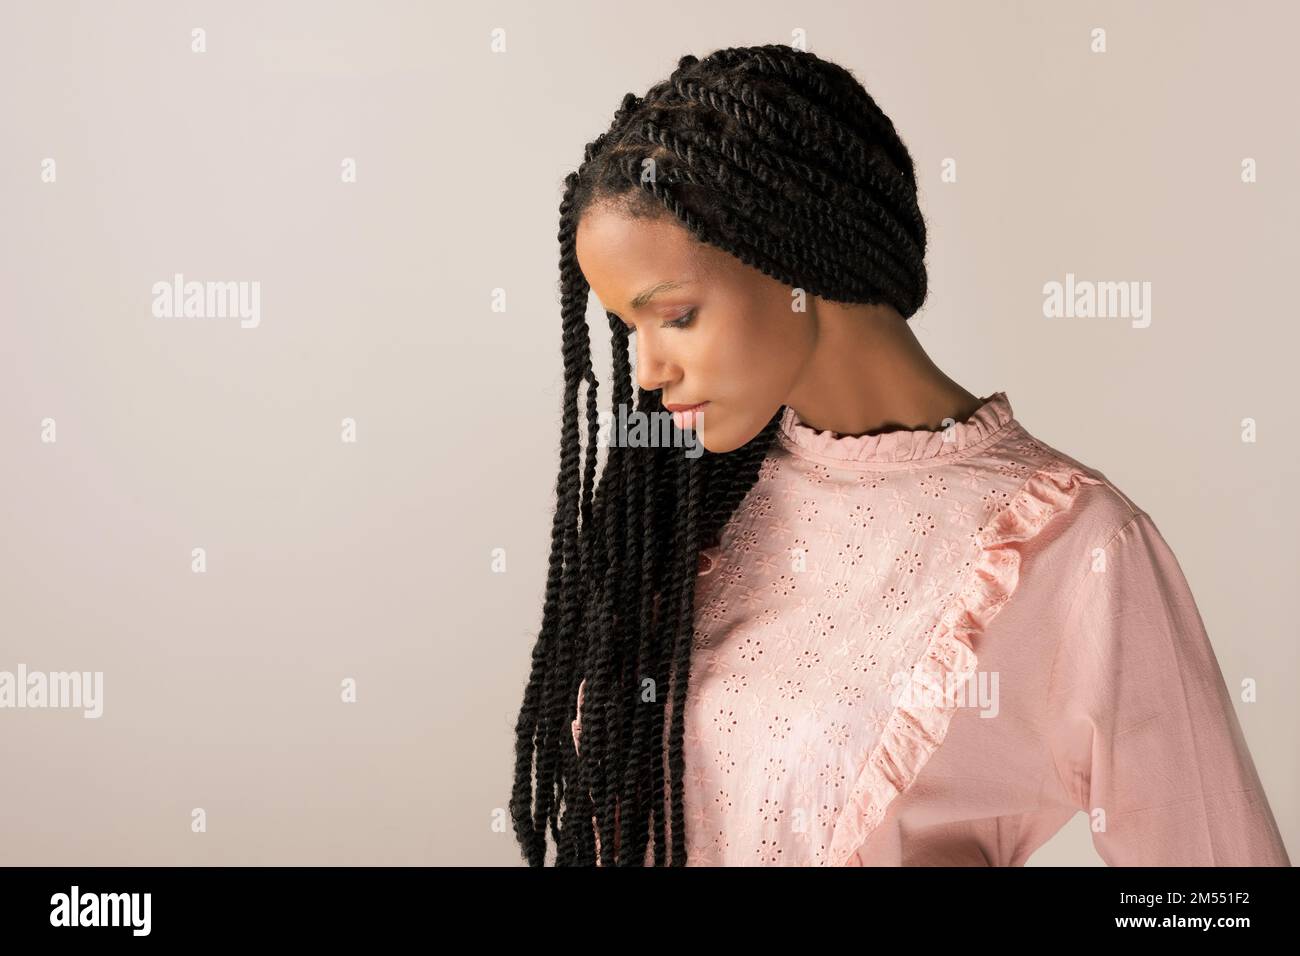 Jeune femme noire en blouse rétro rose avec de longues tresses afro regardant vers le bas sur fond gris Banque D'Images